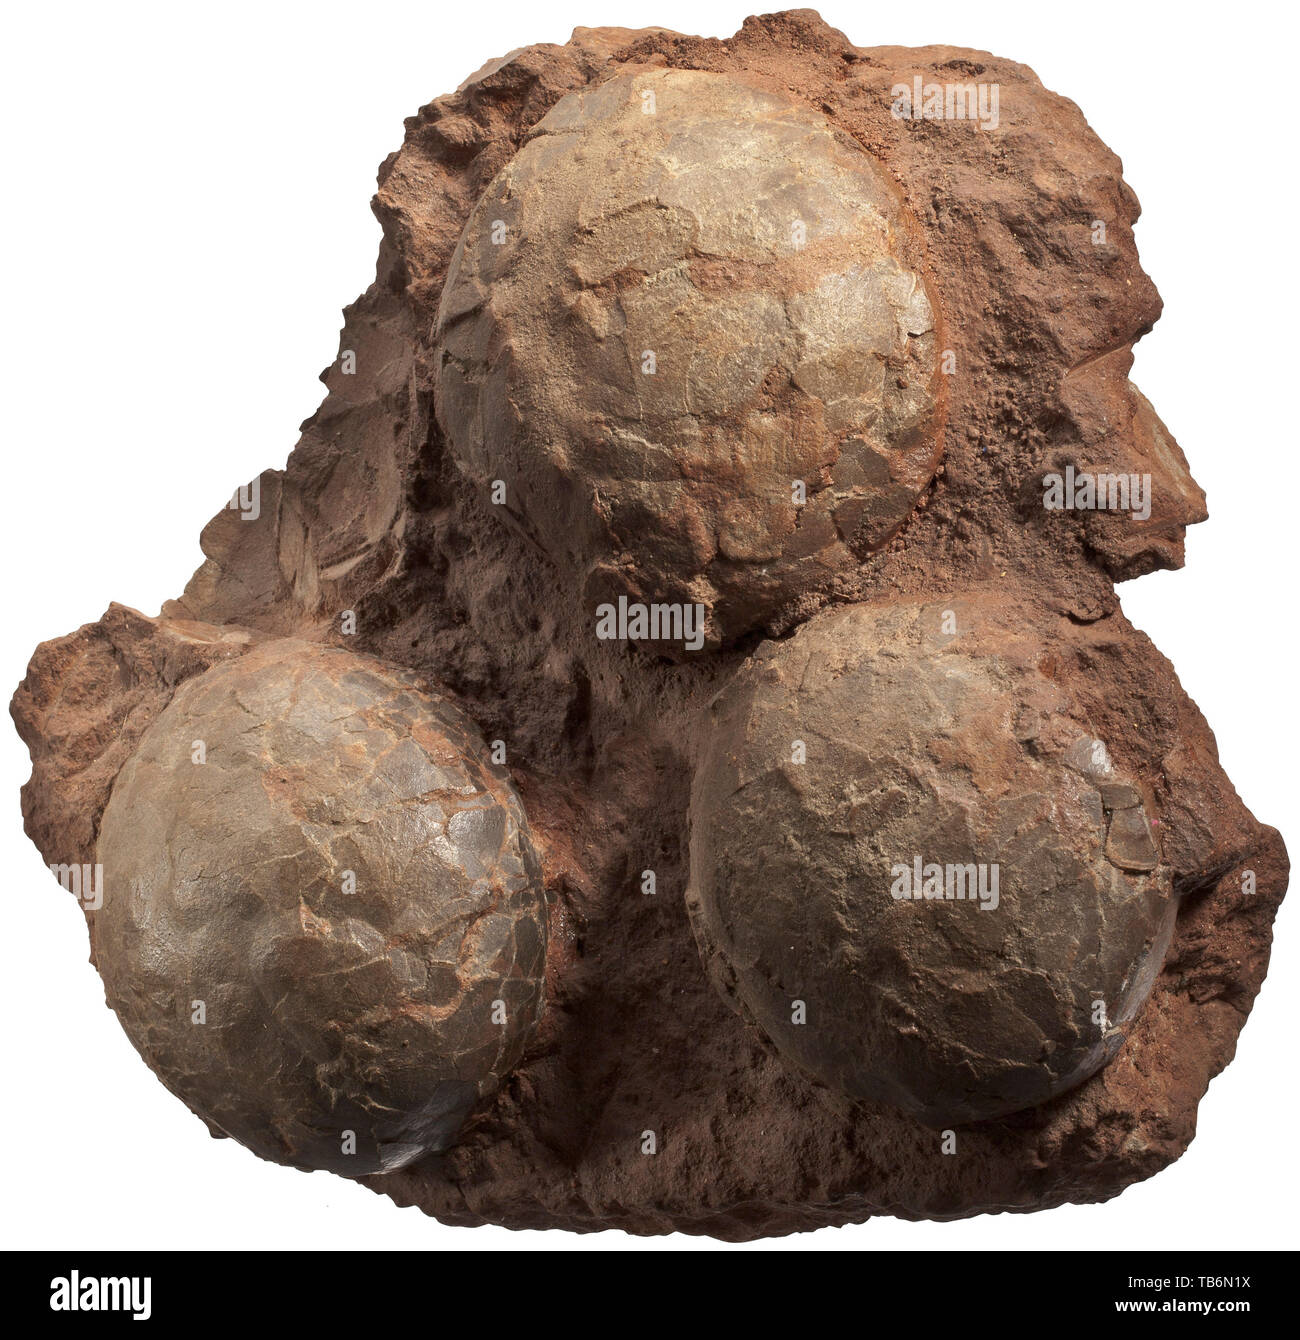 Une couvée de trois œufs de dinosaure, du sud des États-Unis d'Amérique. Période du Crétacé, environ 100 millions d'années. Les dépôts fossilisés avec trois œufs sur une matrice rougeâtre. Diamètre de chaque vers 13 cm, taille totale 33 x 35 cm. Il est extrêmement difficile de classer les oeufs de dinosaures en particulier les espèces. Oeufs ronds, comme proposé dans le présent lot, sont attribués à des herbivores. Artisanat, Artisanat, Artisanat, objet, objets, alambics, clipping, coupures, cut out, cut-out, cut-outs, historique, préhistorique, historique Additional-Rights Clearance-Info-Not-Available- Banque D'Images